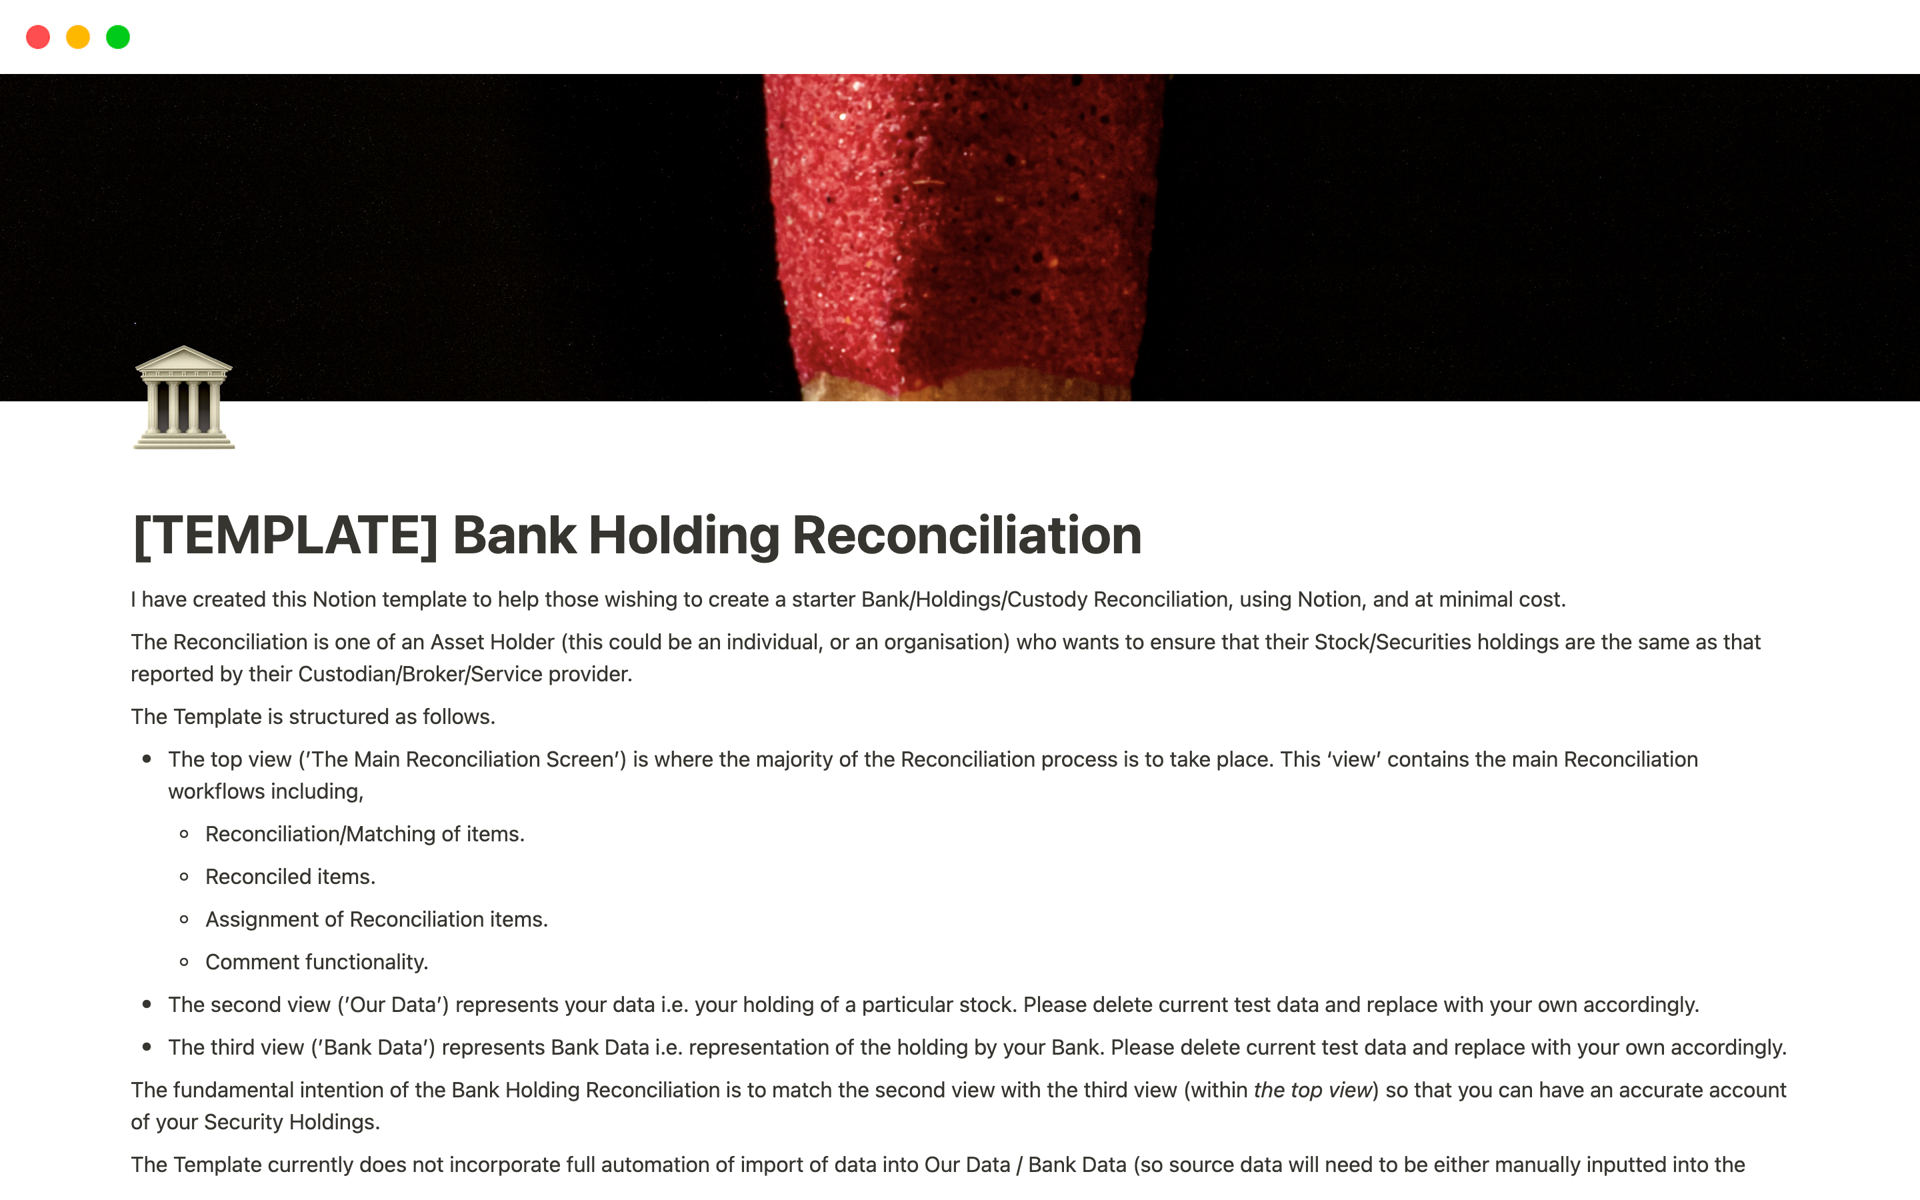 Uma prévia do modelo para Bank Holding Reconciliation